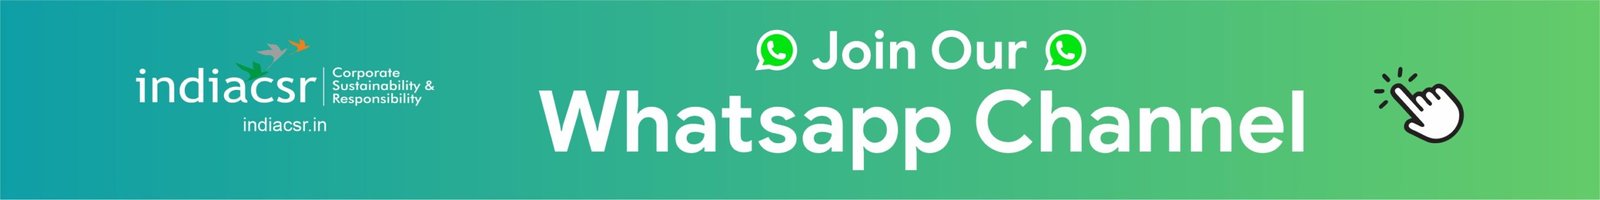 Kliknij tutaj, aby śledzić nasz kanał WhatsApp!